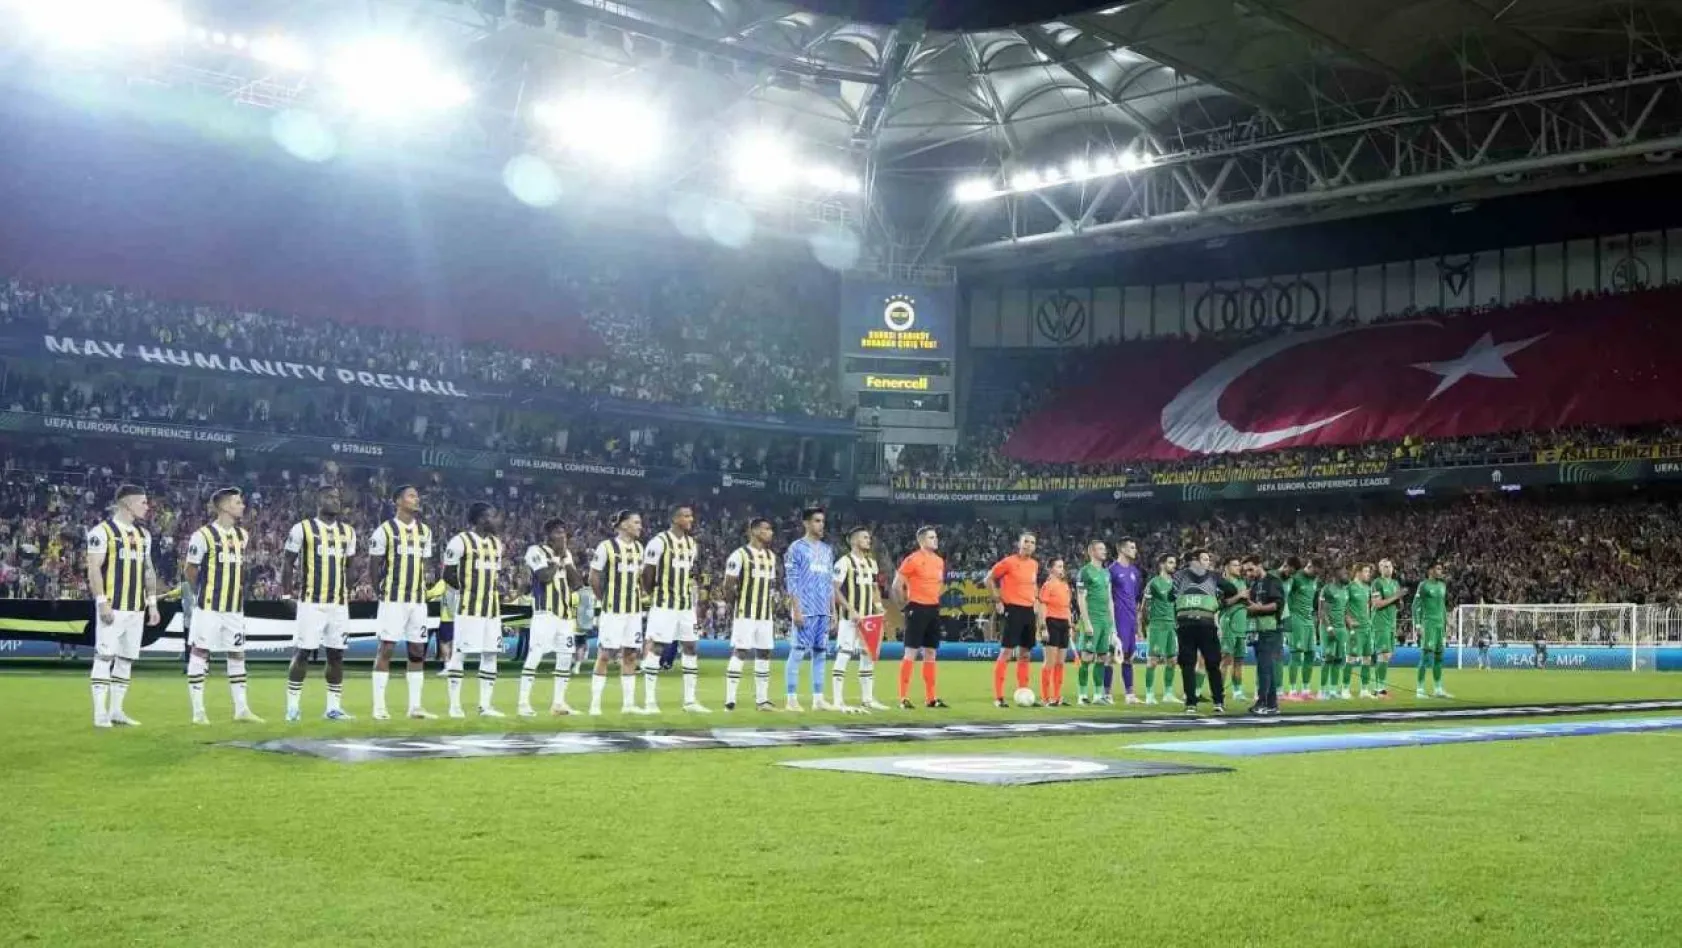 UEFA Avrupa Konferans Ligi: Fenerbahçe: 0 - Ludogorets Razgrad: 0 (Maç devam ediyor)